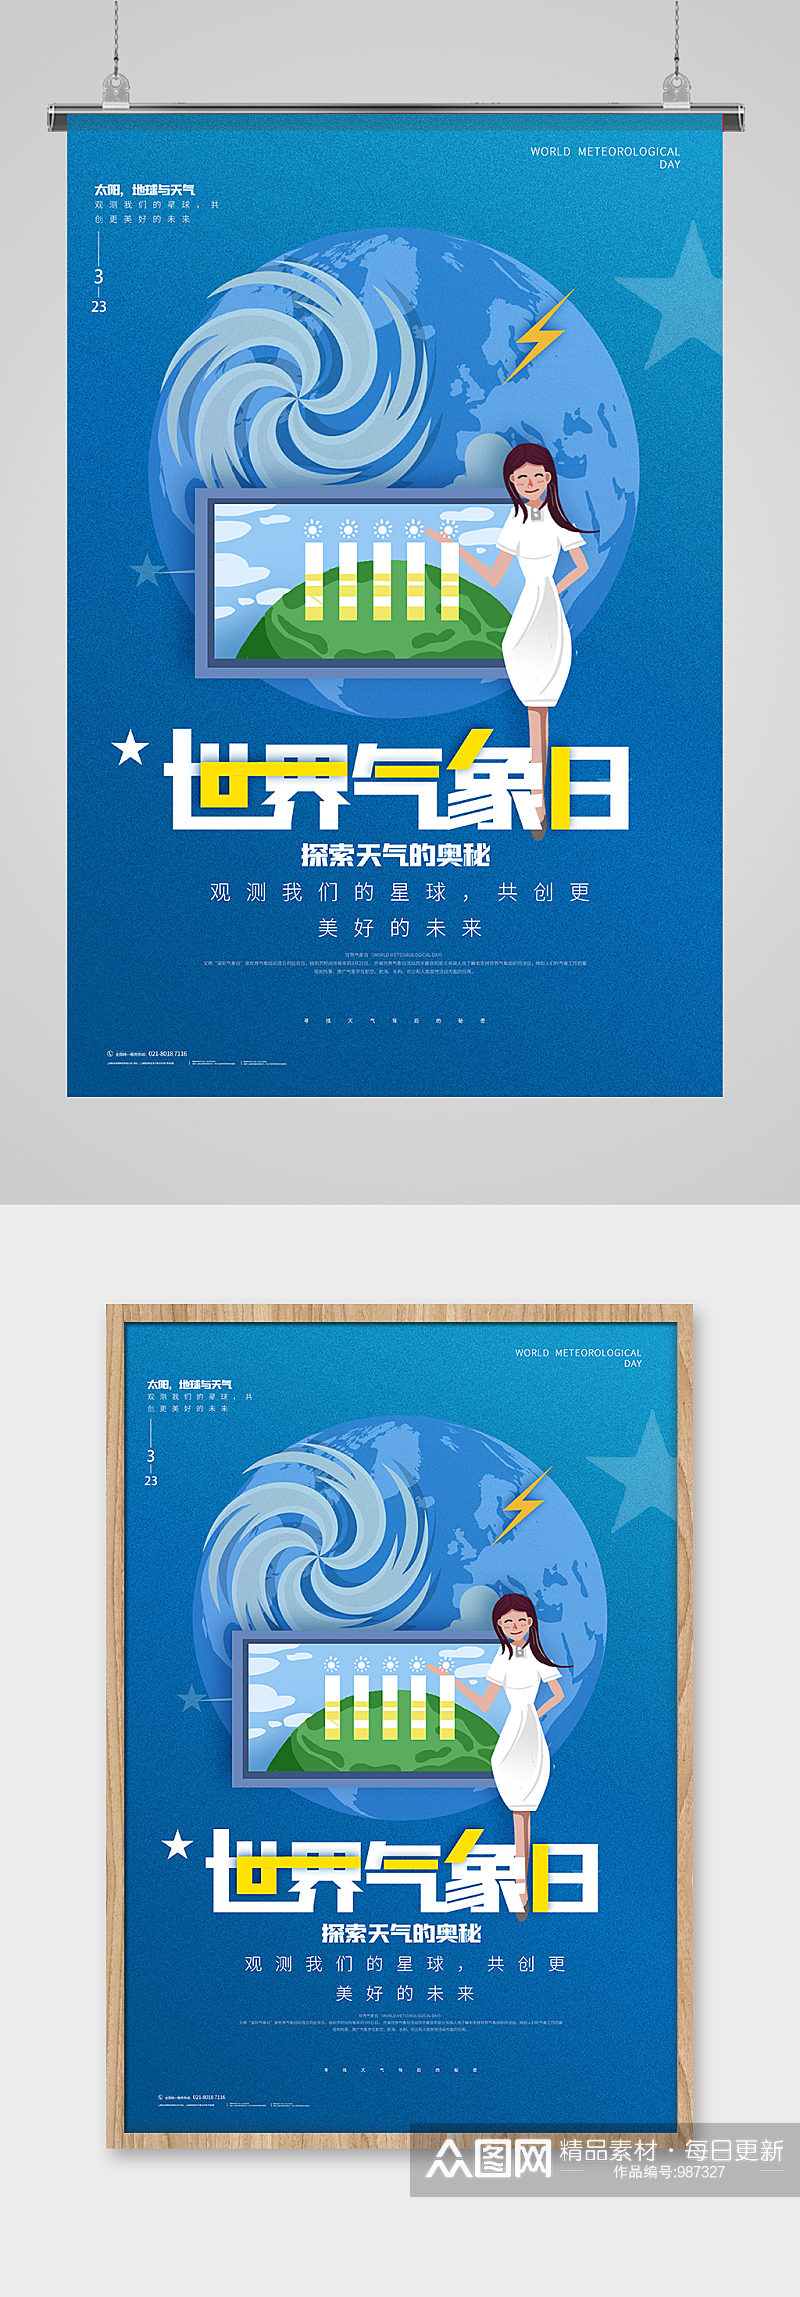 蓝色世界气象日公益宣传世界气象日海报 展板素材